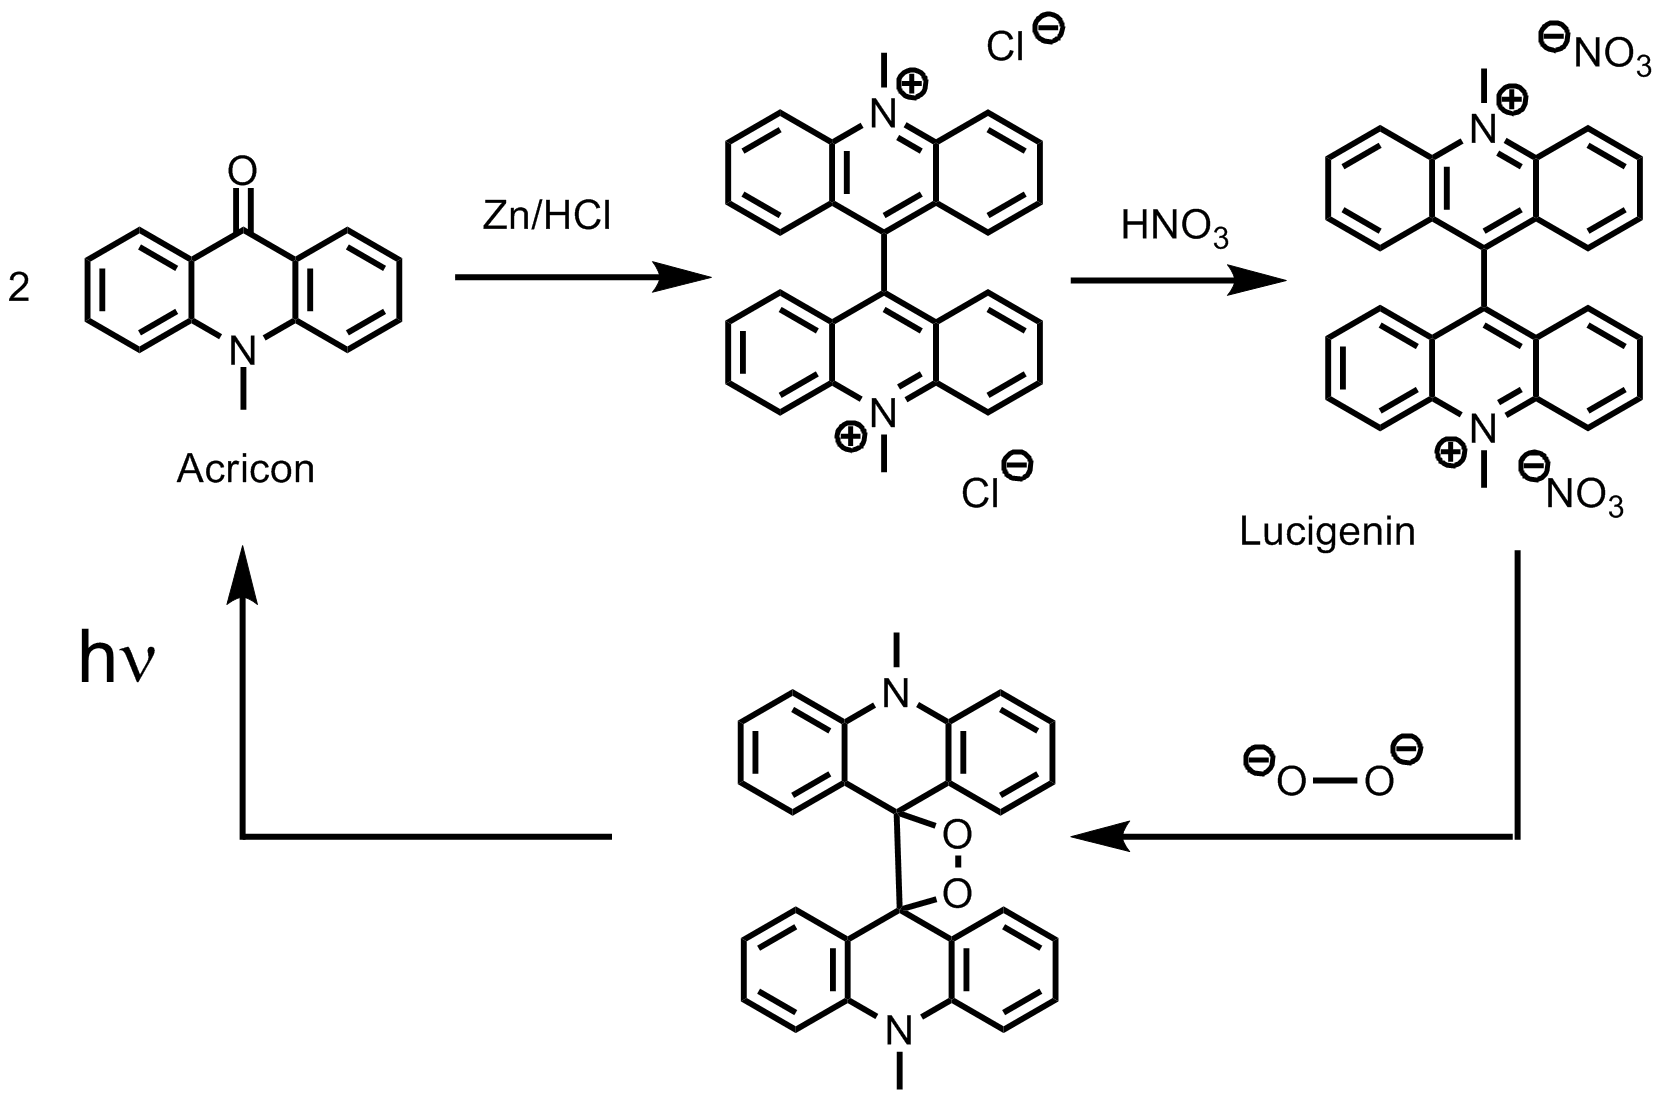 Herstellung und Chemilumineszenz von Lucigenin